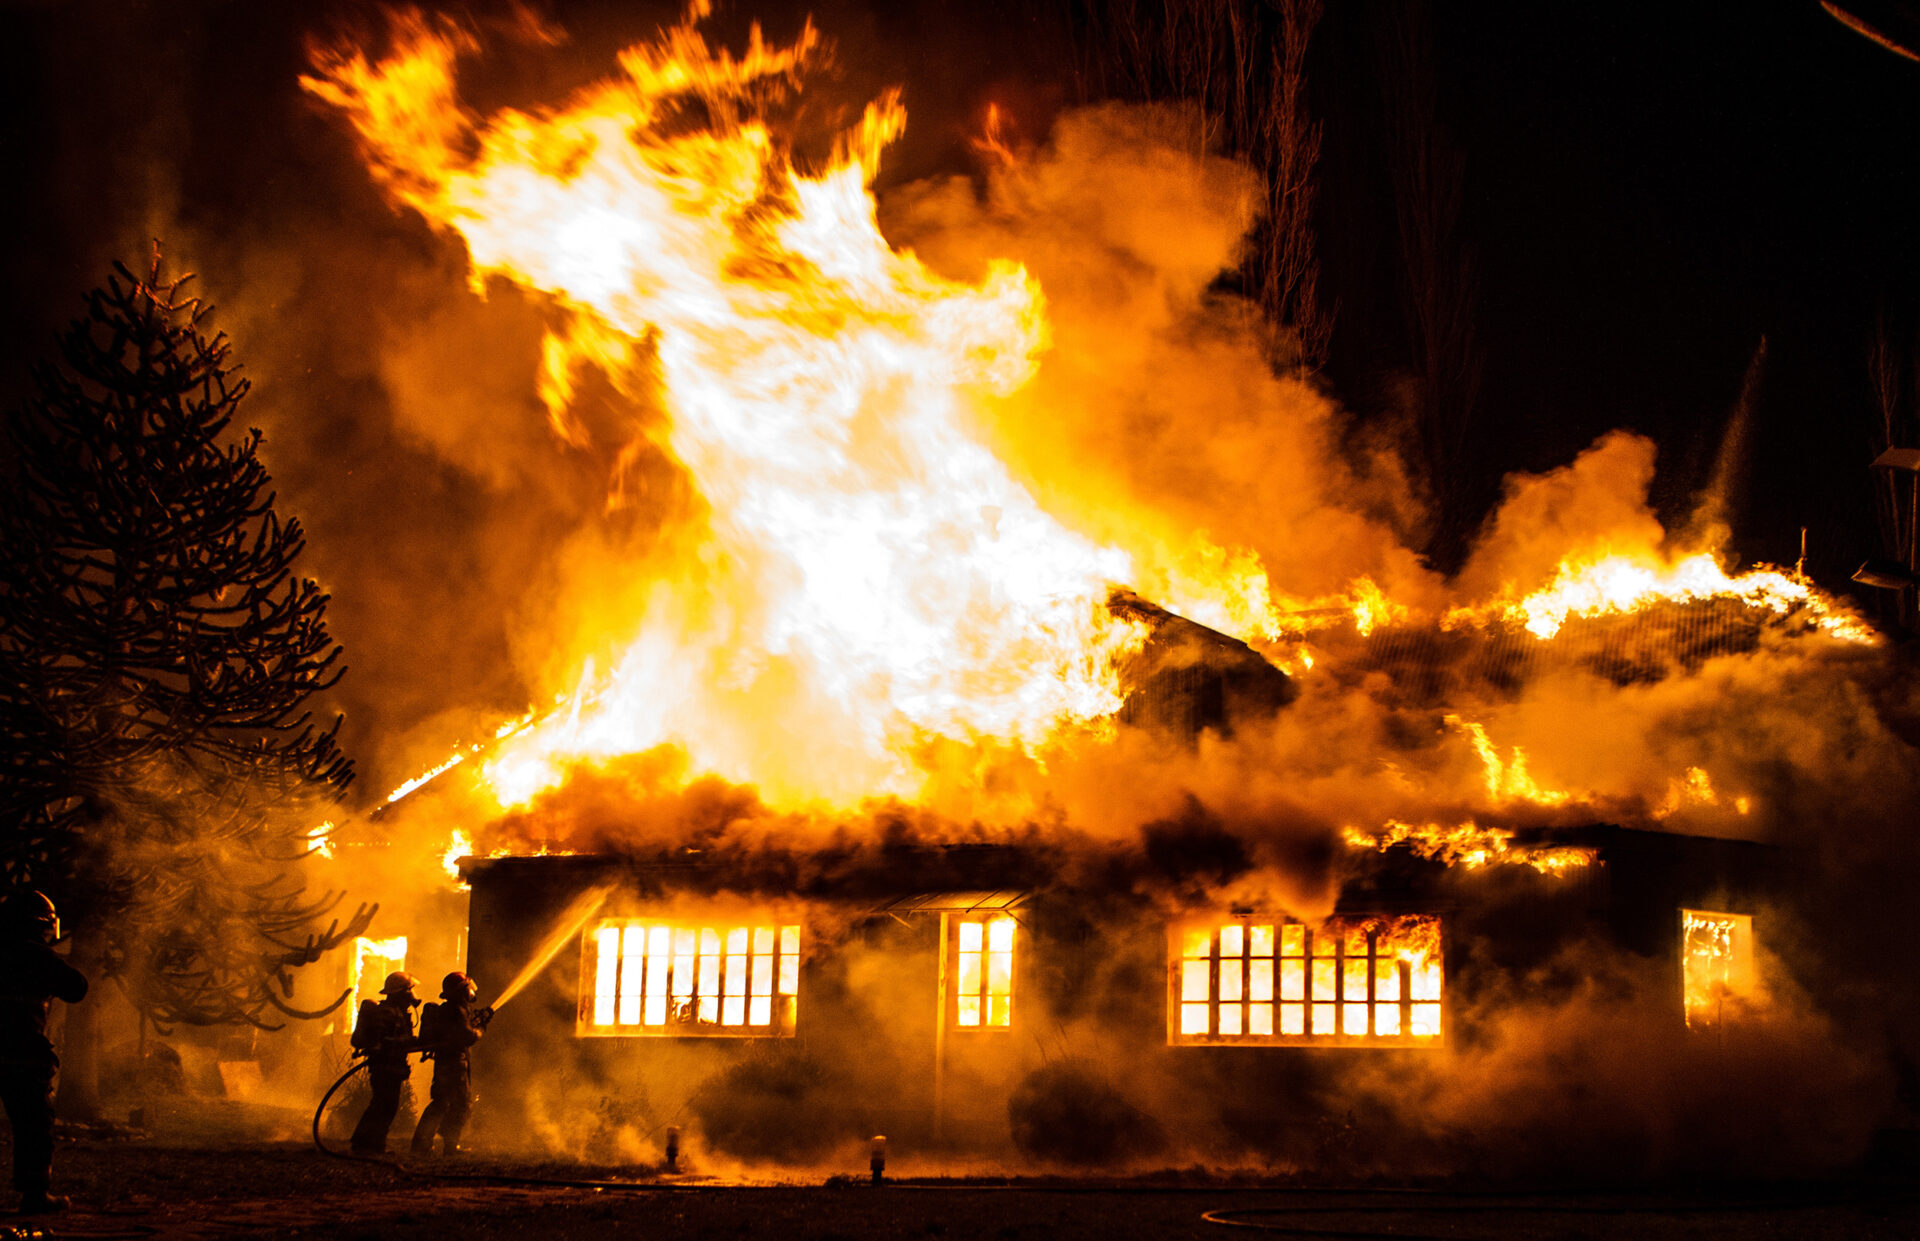 Brandversicherung und Wohngebäudeversicherung - unerlässlich für Hausbesitzer. Erfahren Sie mehr zu diesem Thema und lassen Sie sich von unseren Experten beraten